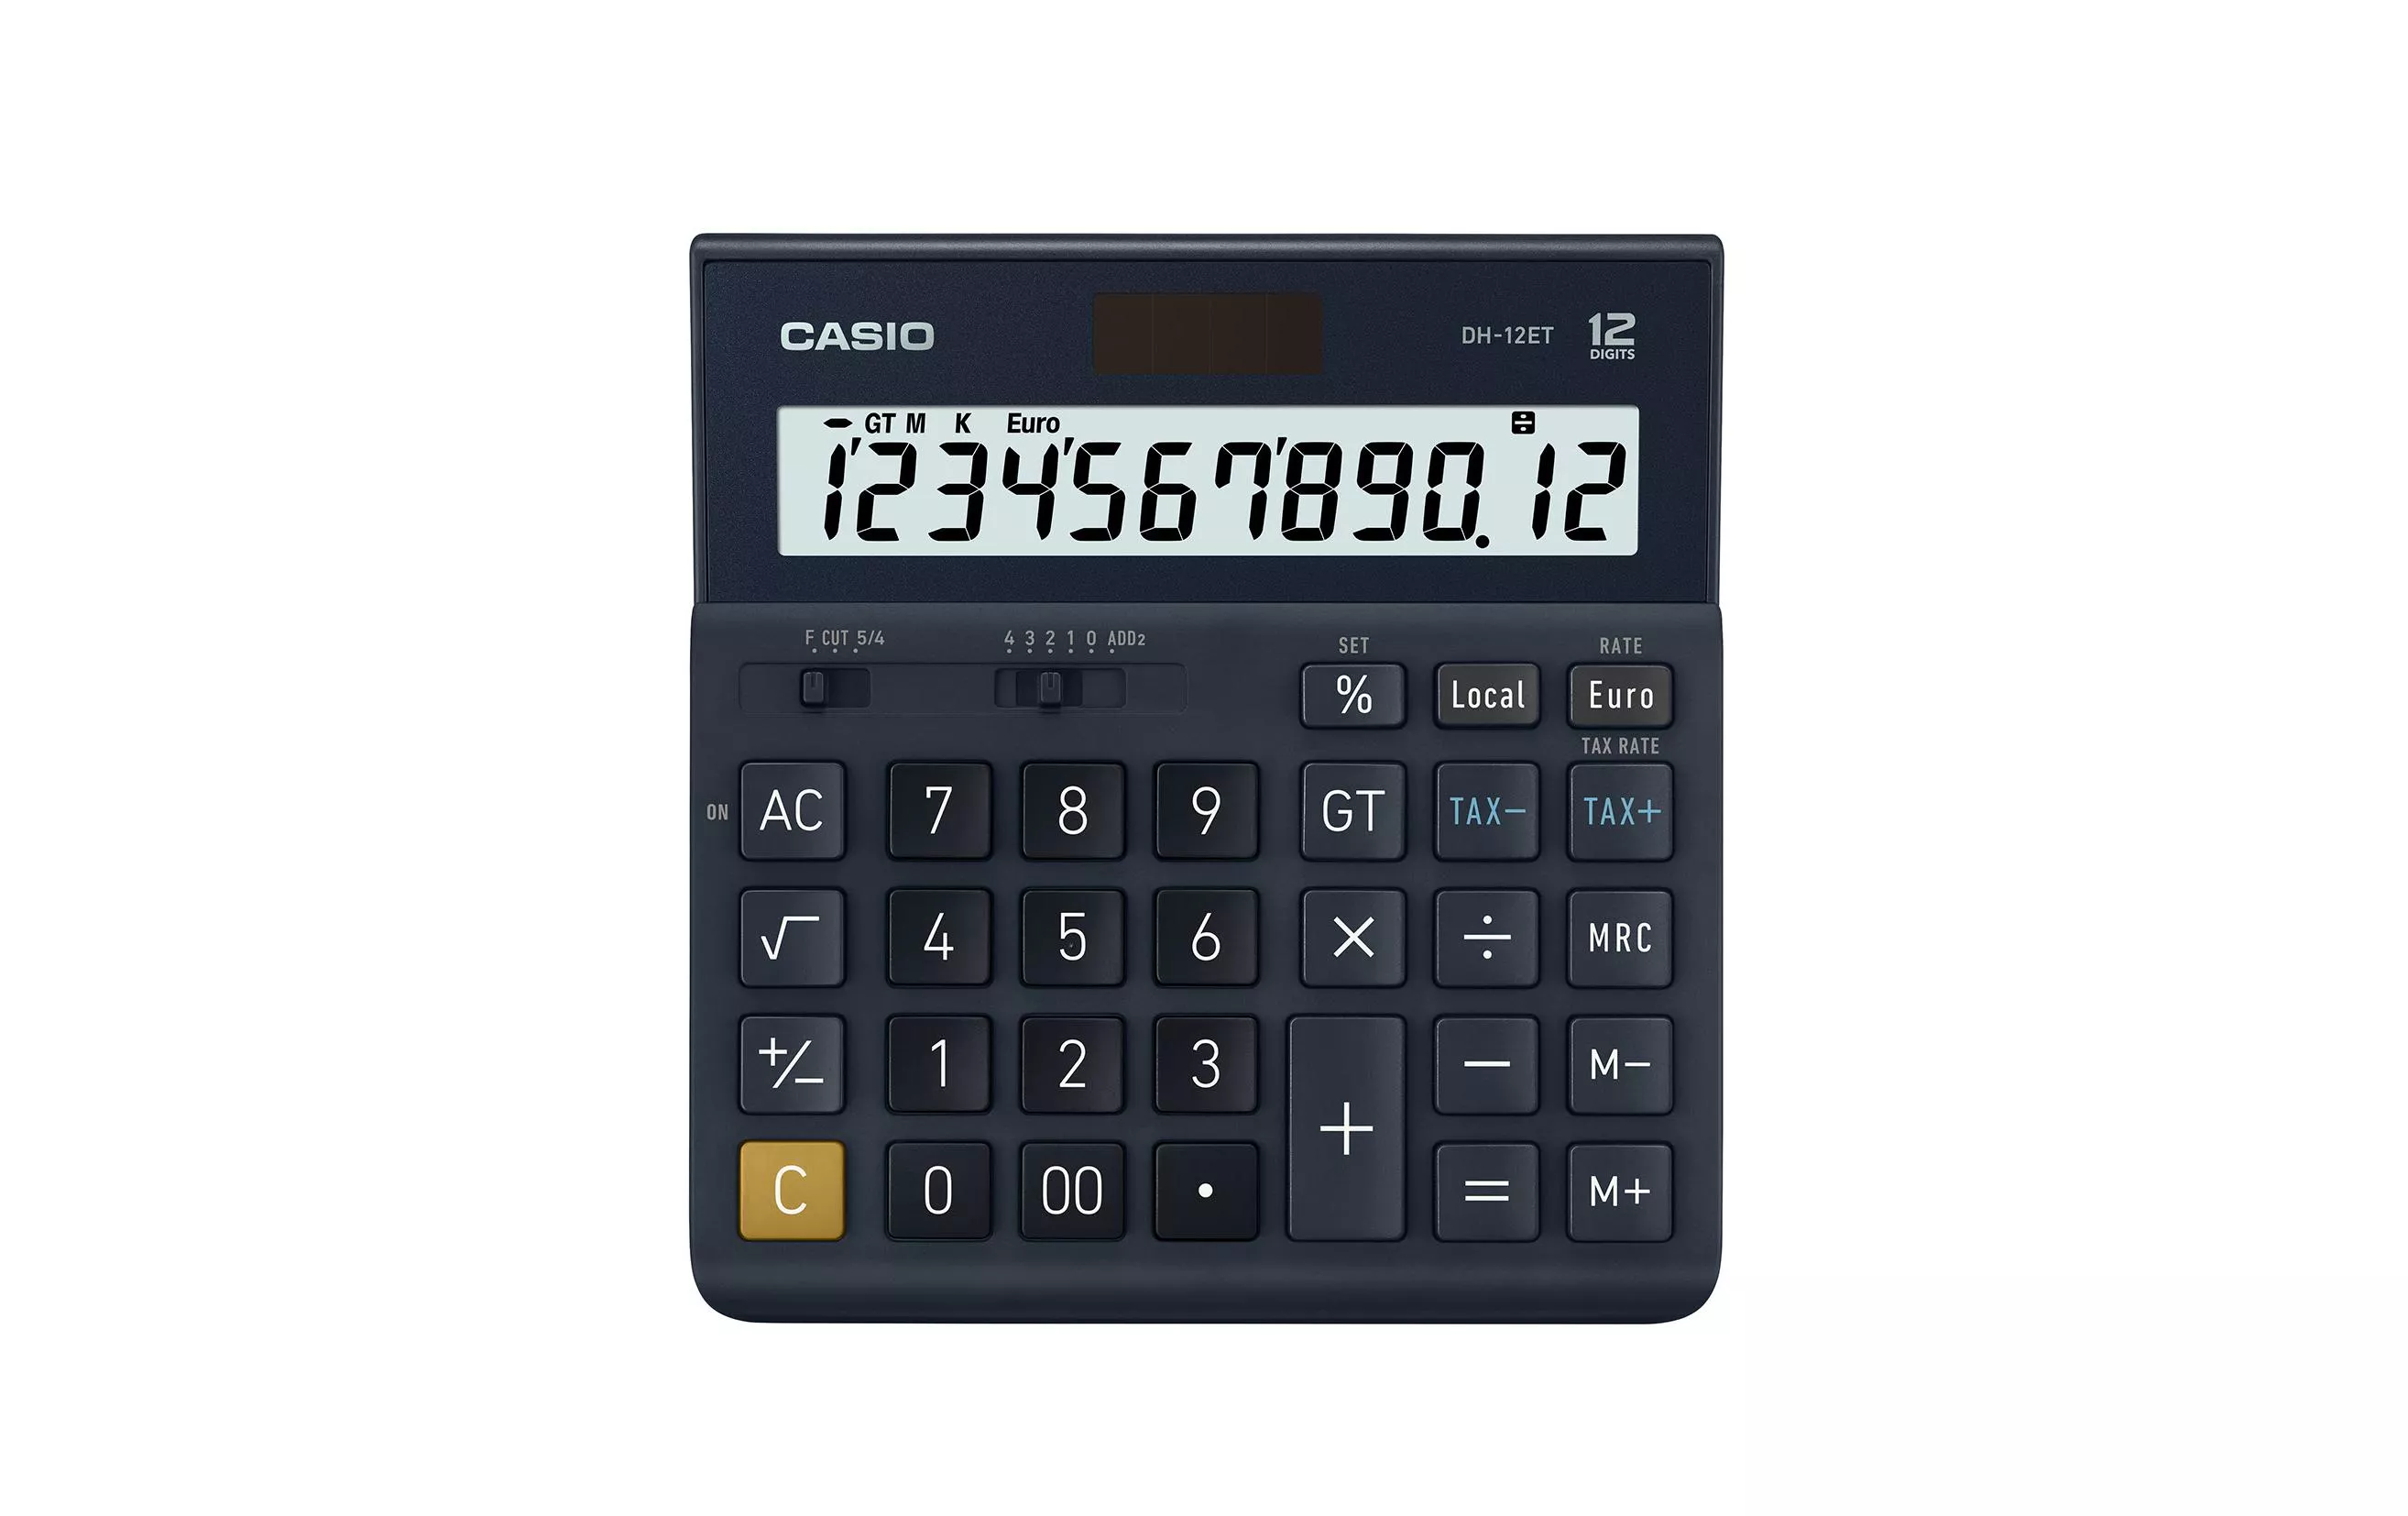 Calcolatrice Casio CS-DH-12ET